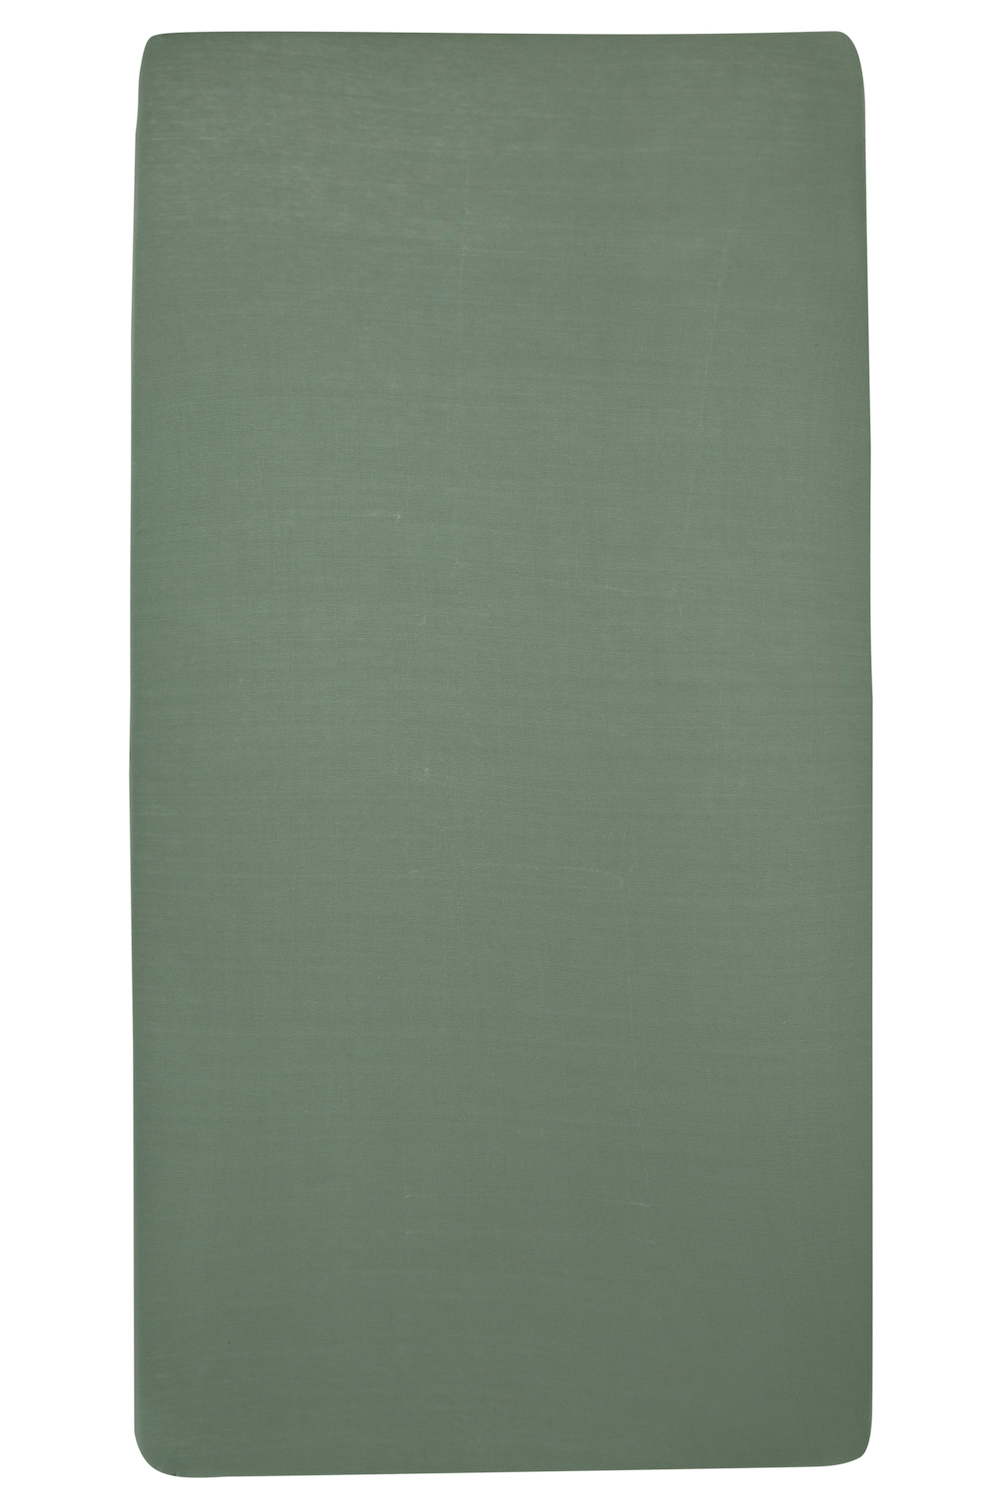 Hoeslaken eenpersoonsbed Uni - forest green - 80x210/220cm